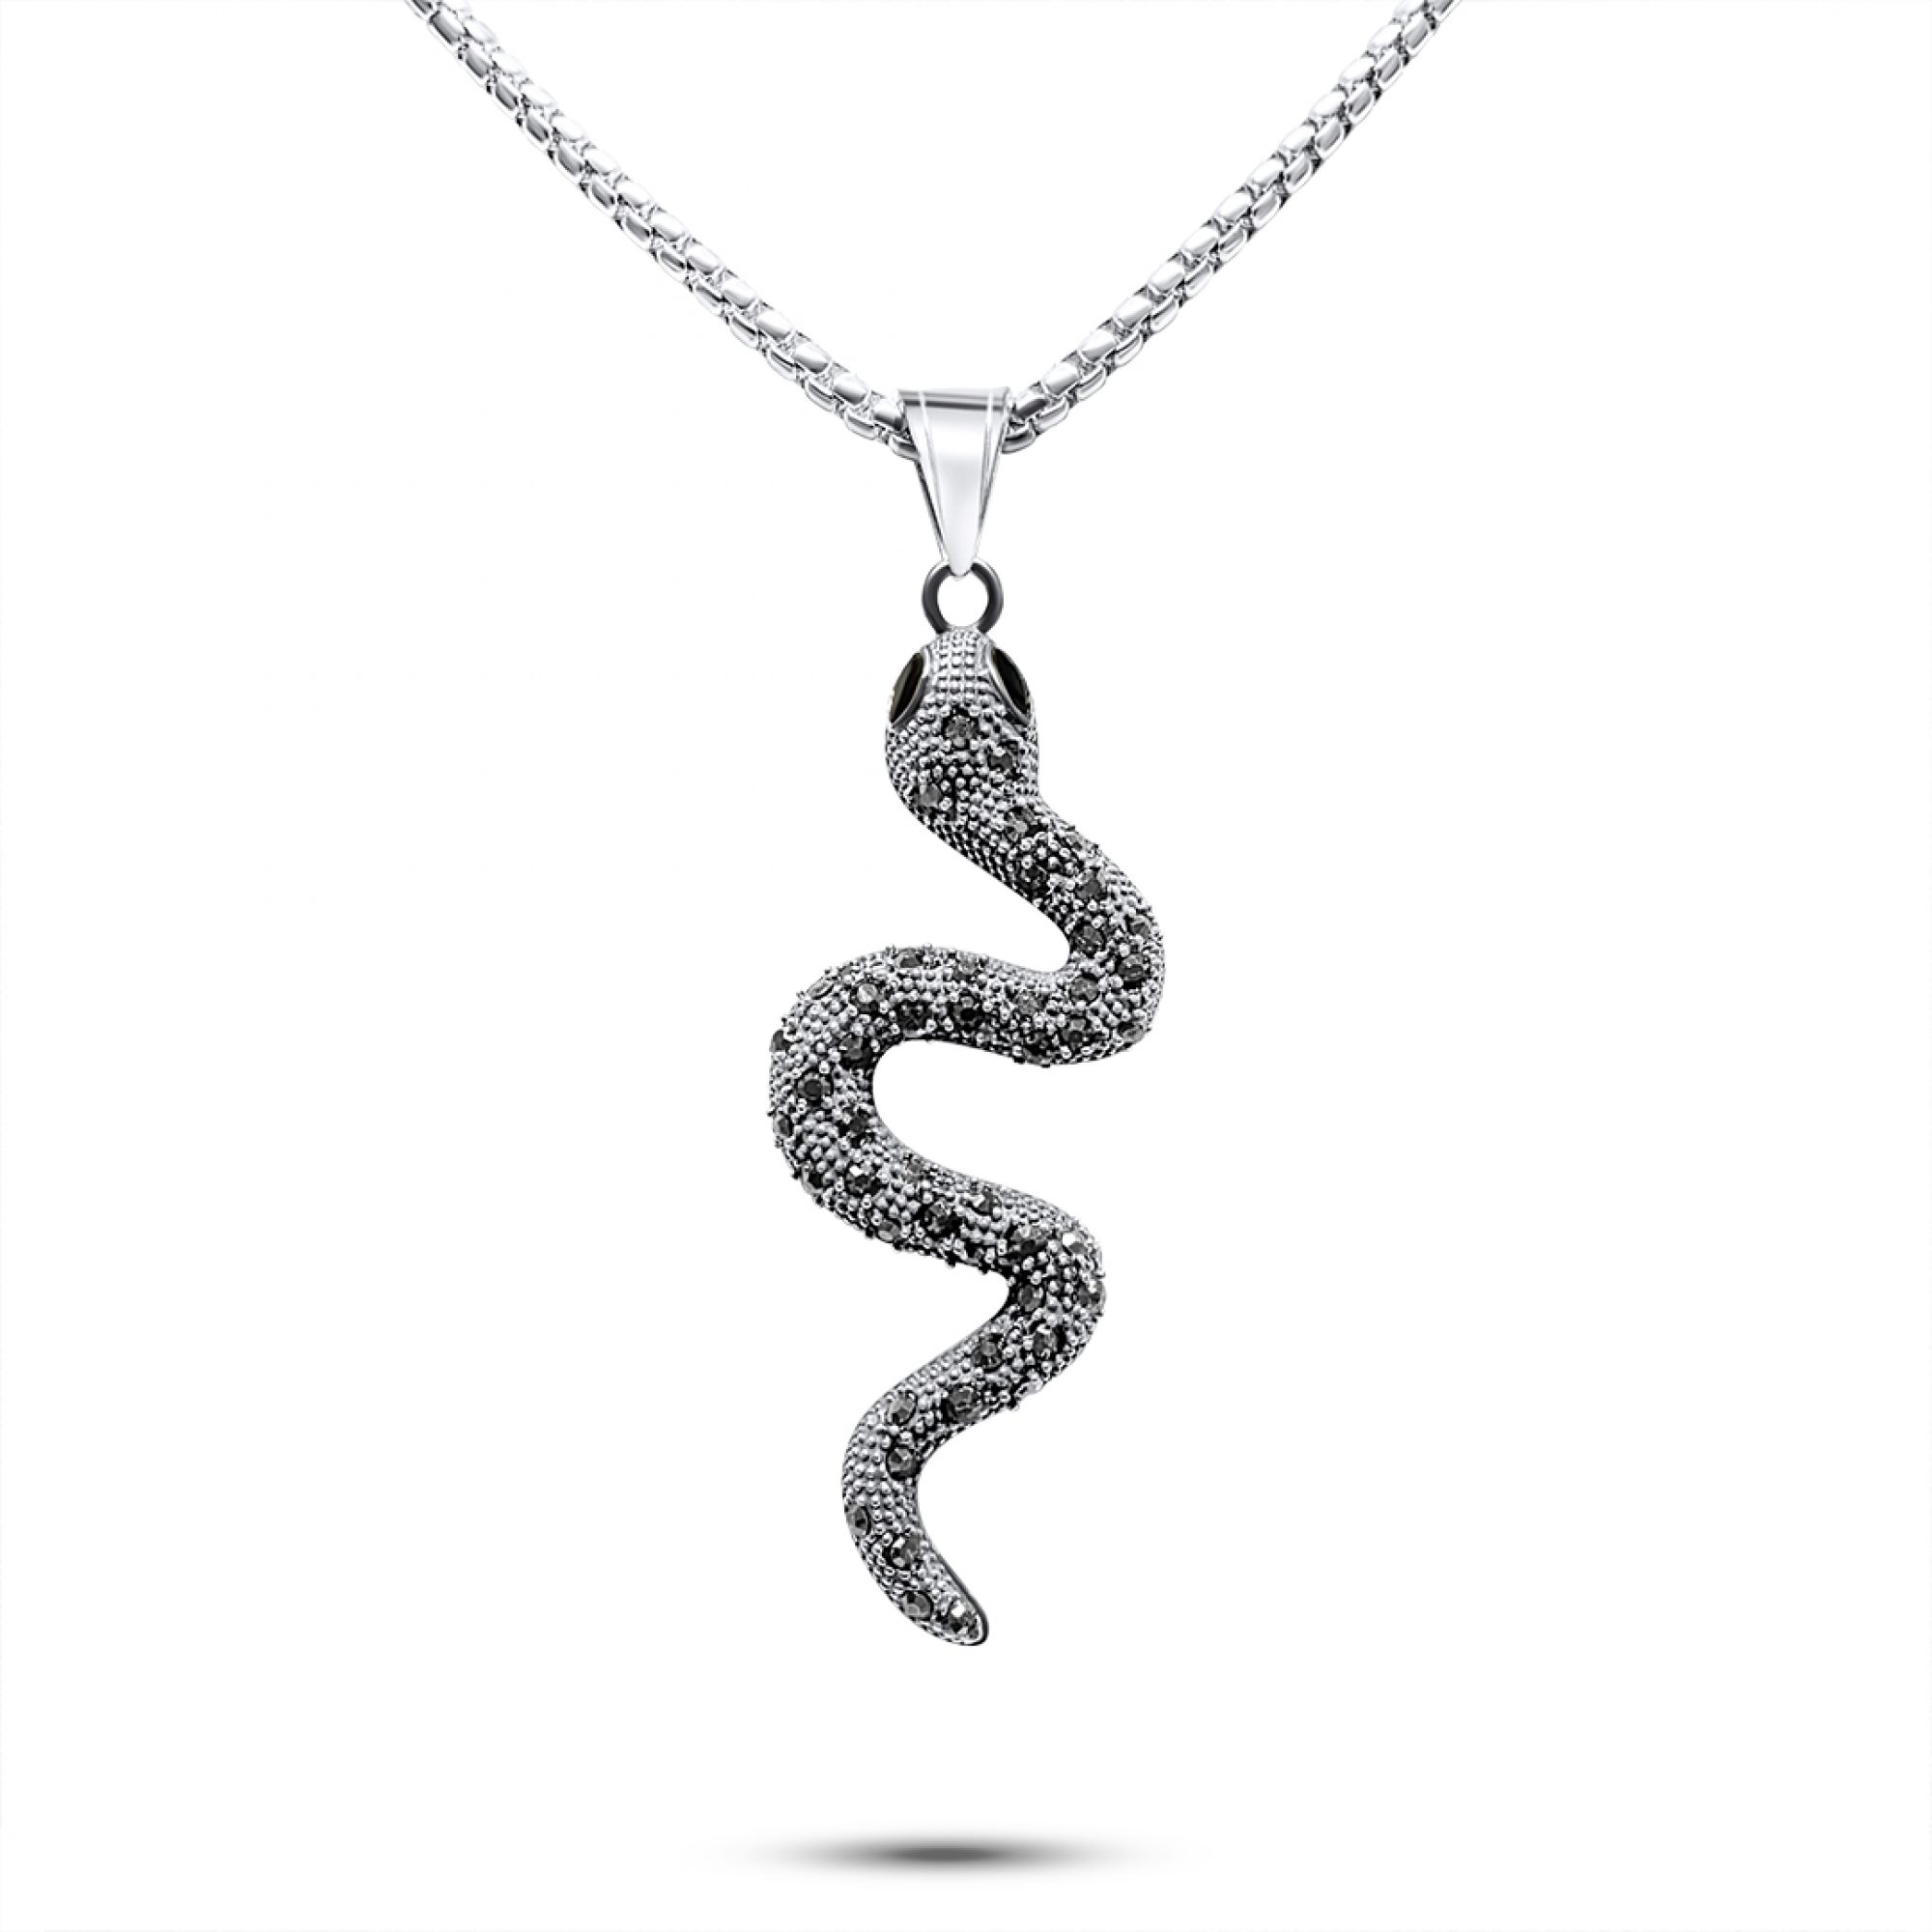 Steel snake necklace